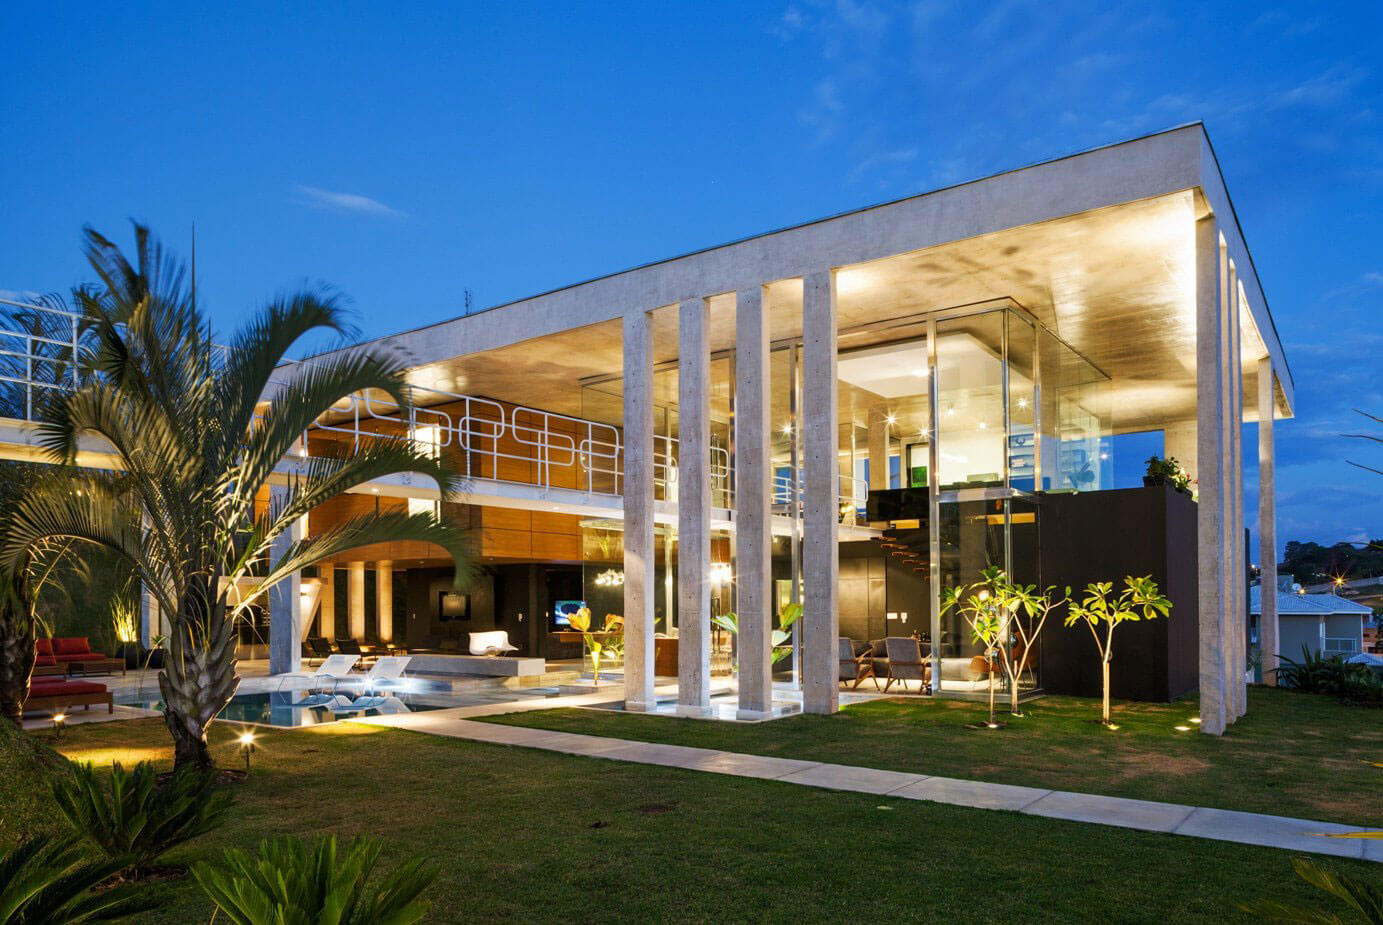 Botucatu House by FGMF Arquitetos